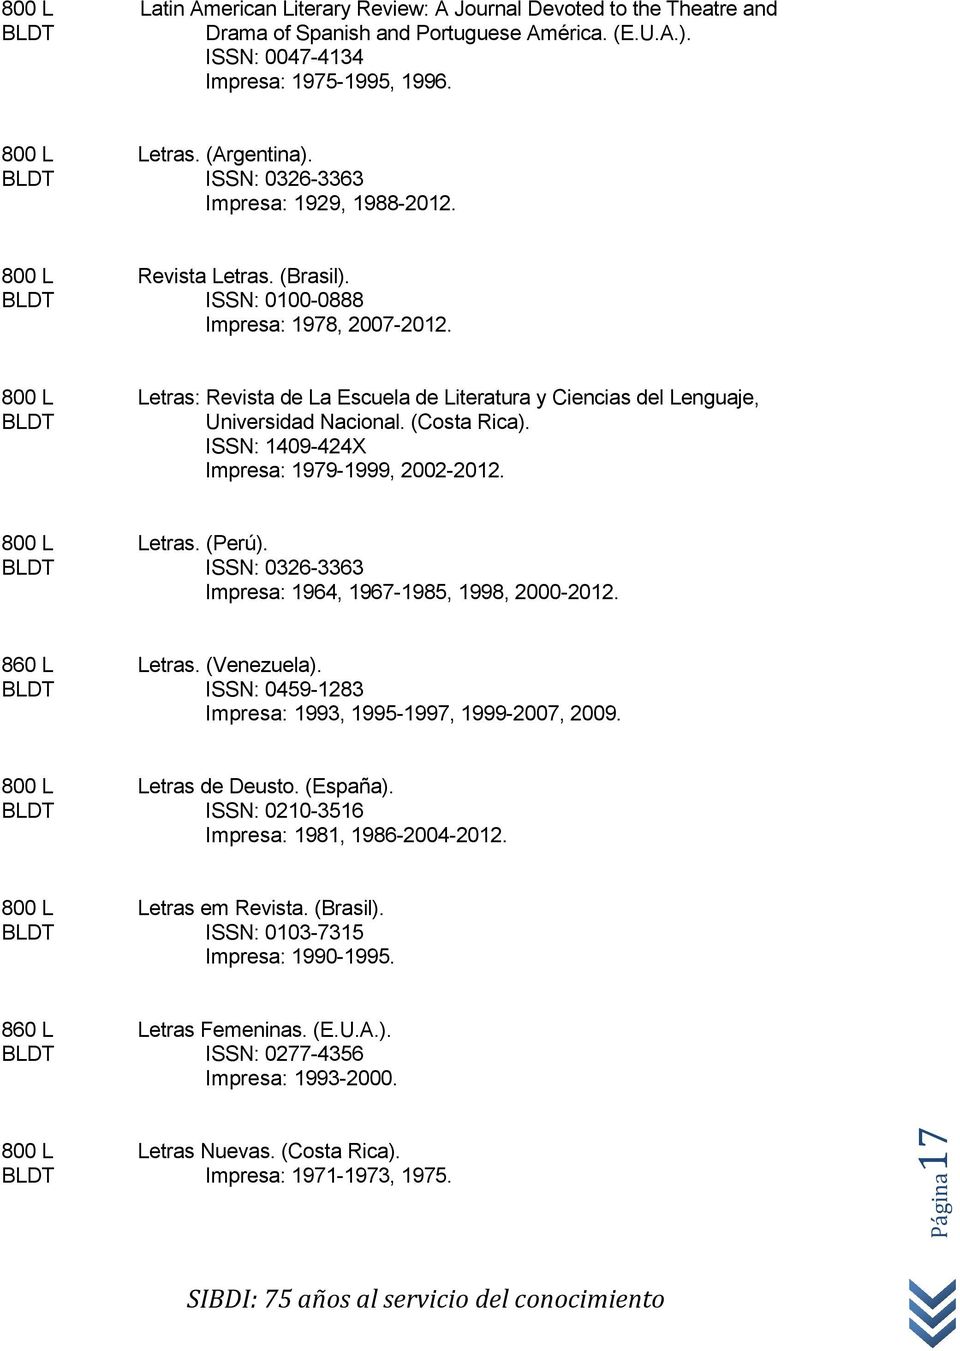 800 L Letras: Revista de La Escuela de Literatura y Ciencias del Lenguaje, Universidad Nacional. (Costa Rica). ISSN: 1409-424X Impresa: 1979-1999, 2002-2012. 800 L Letras. (Perú).